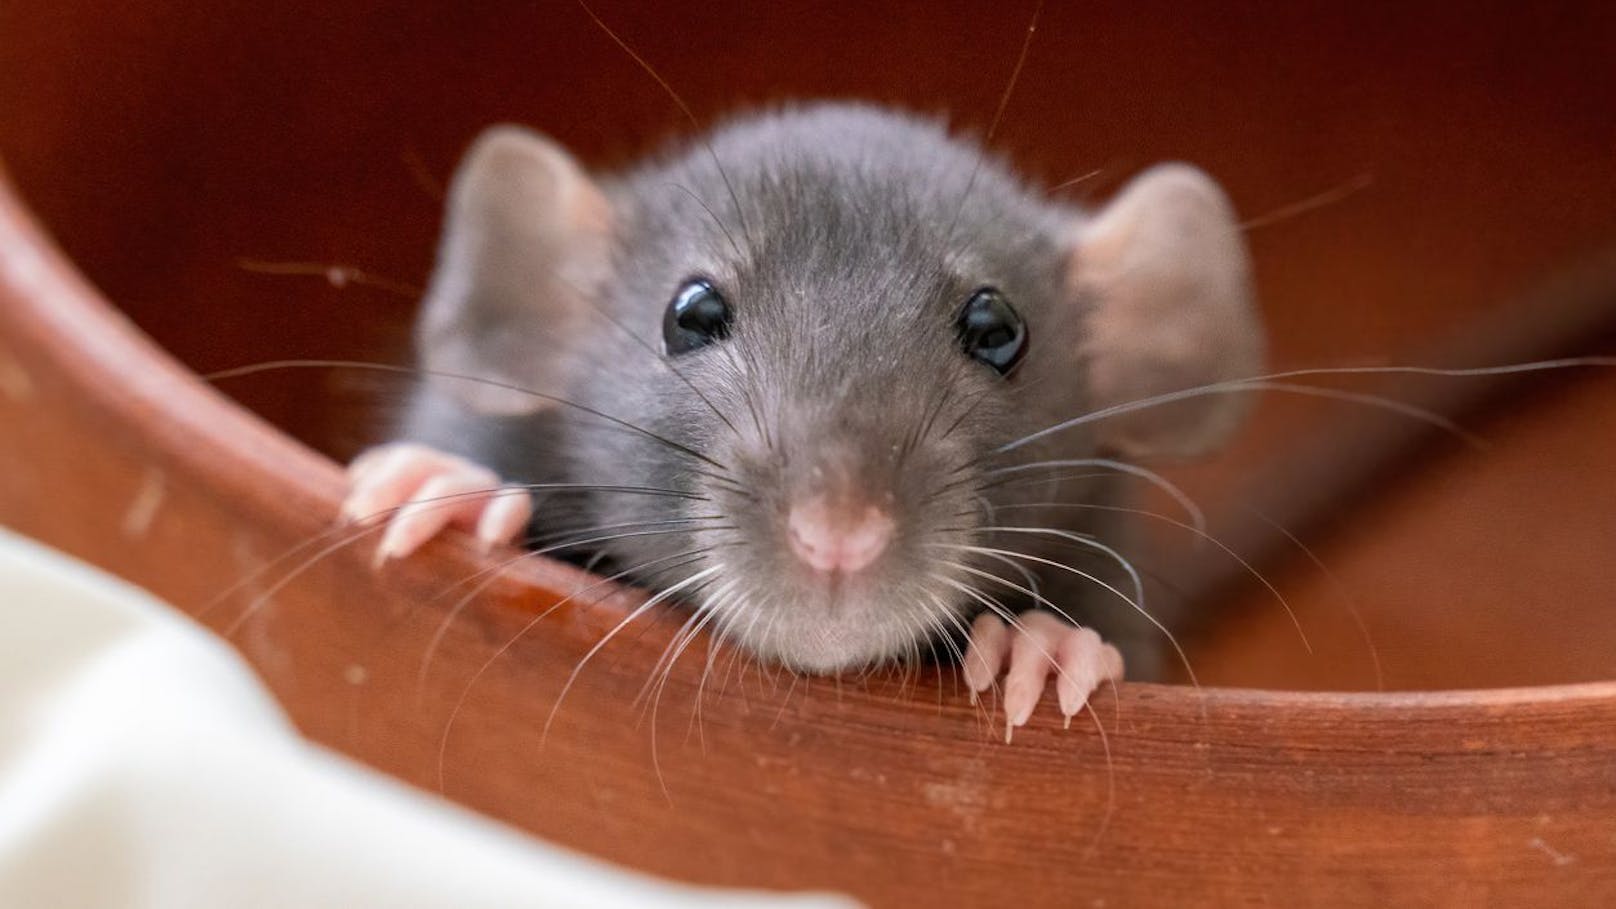 Dass man Ratten nicht im Garten möchte, ist verständlich - es gibt aber auch freundliche Wege sie loszuwerden.&nbsp;